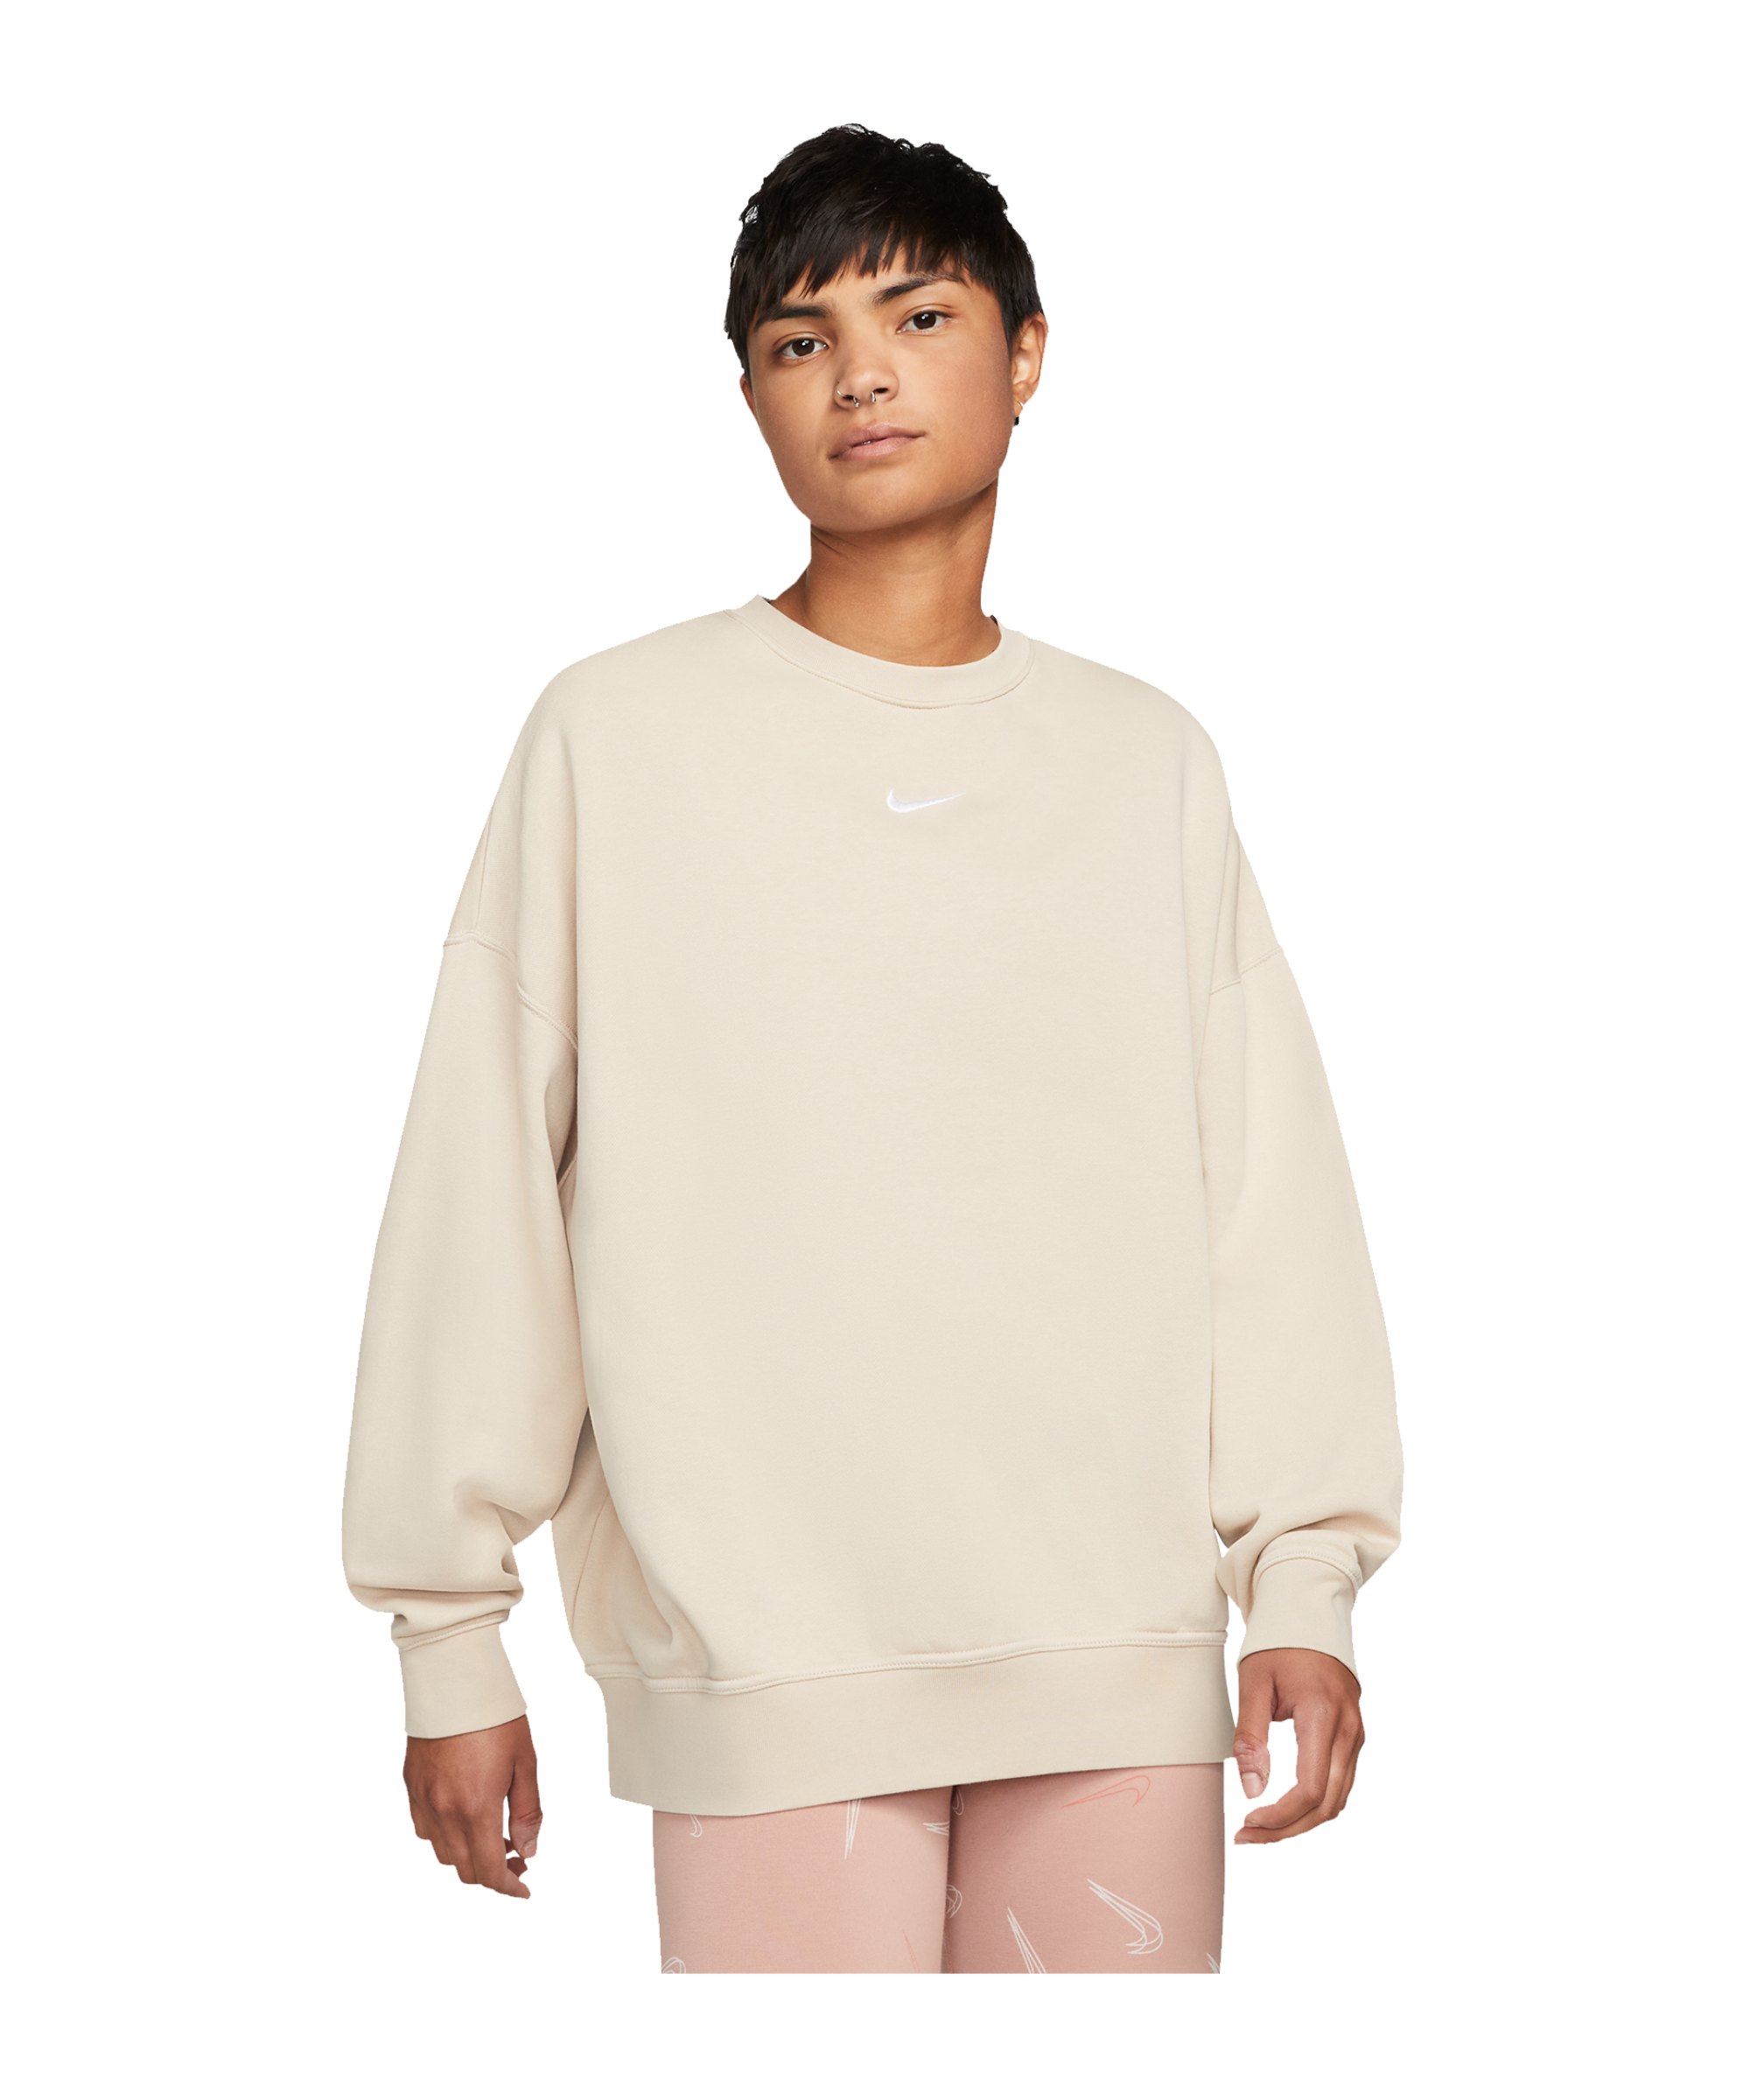 Nike Oversized Fleece Sweatshirt Damen Beige F126 - beige